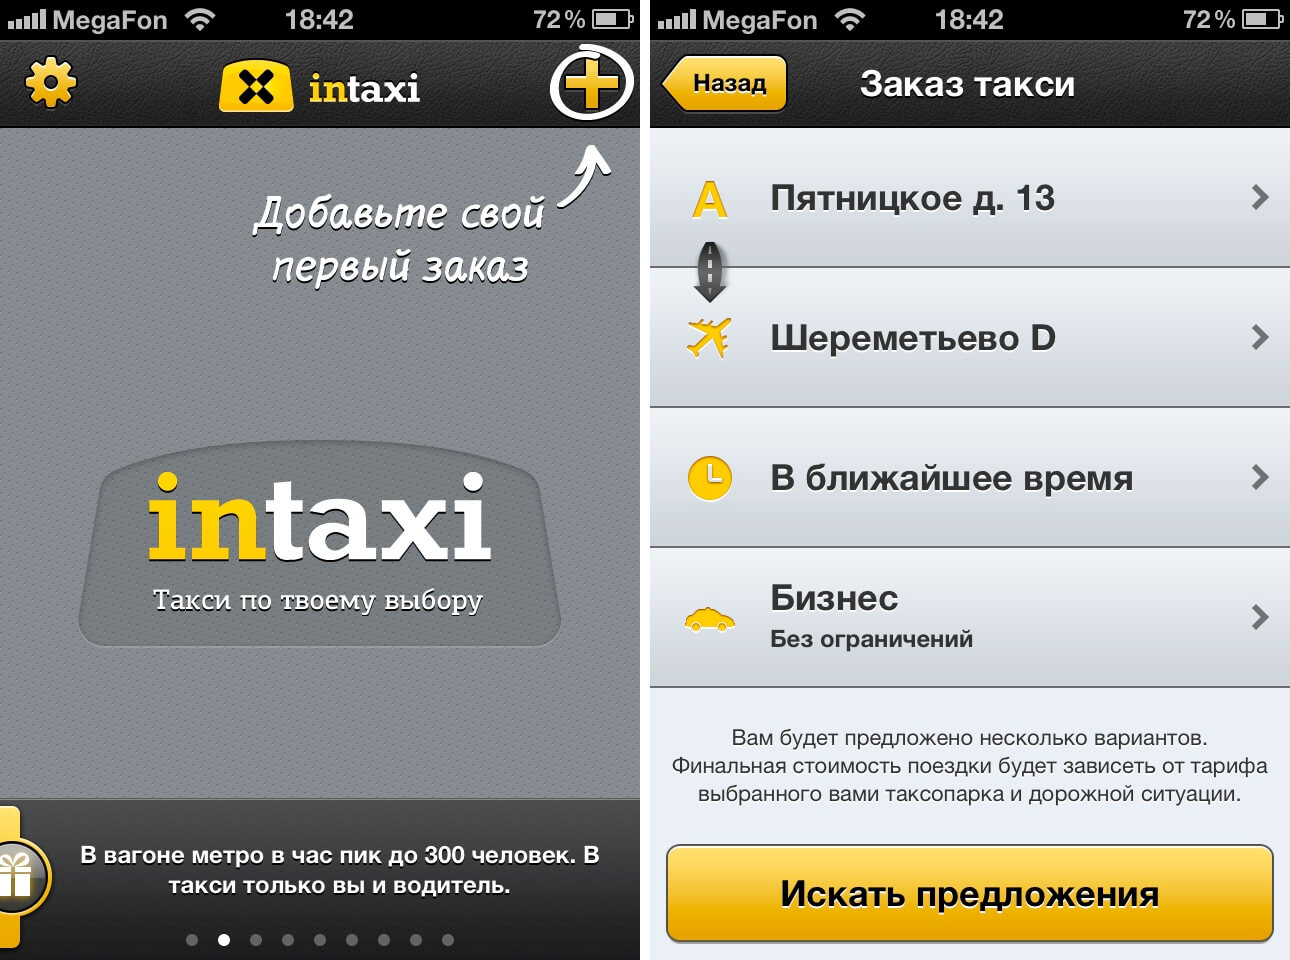 Обновить приложение такси. Приложение такси. Программа "такси". Такси приложение для водителей. Интерфейс приложения такси для водителей.